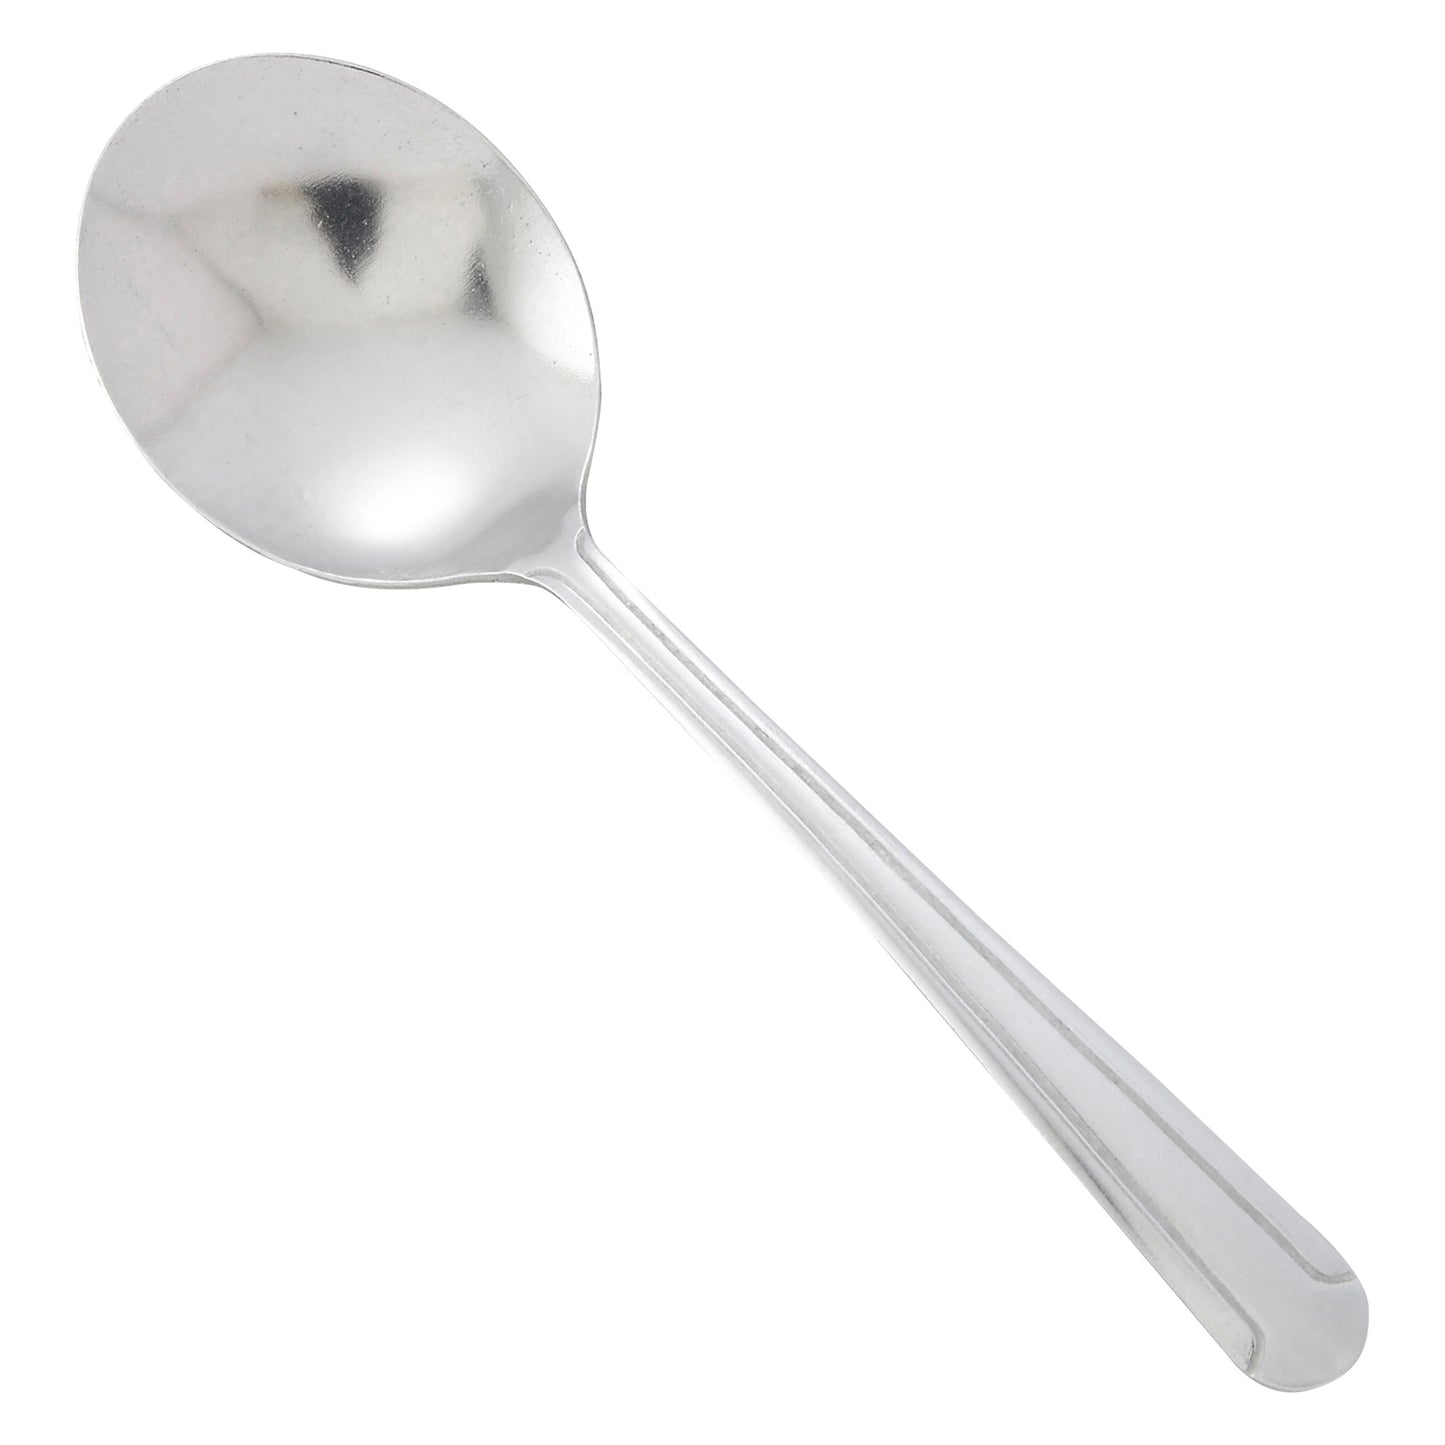 0001-04 - Dominion Bouillon Spoon, 18/0 Medium Weight